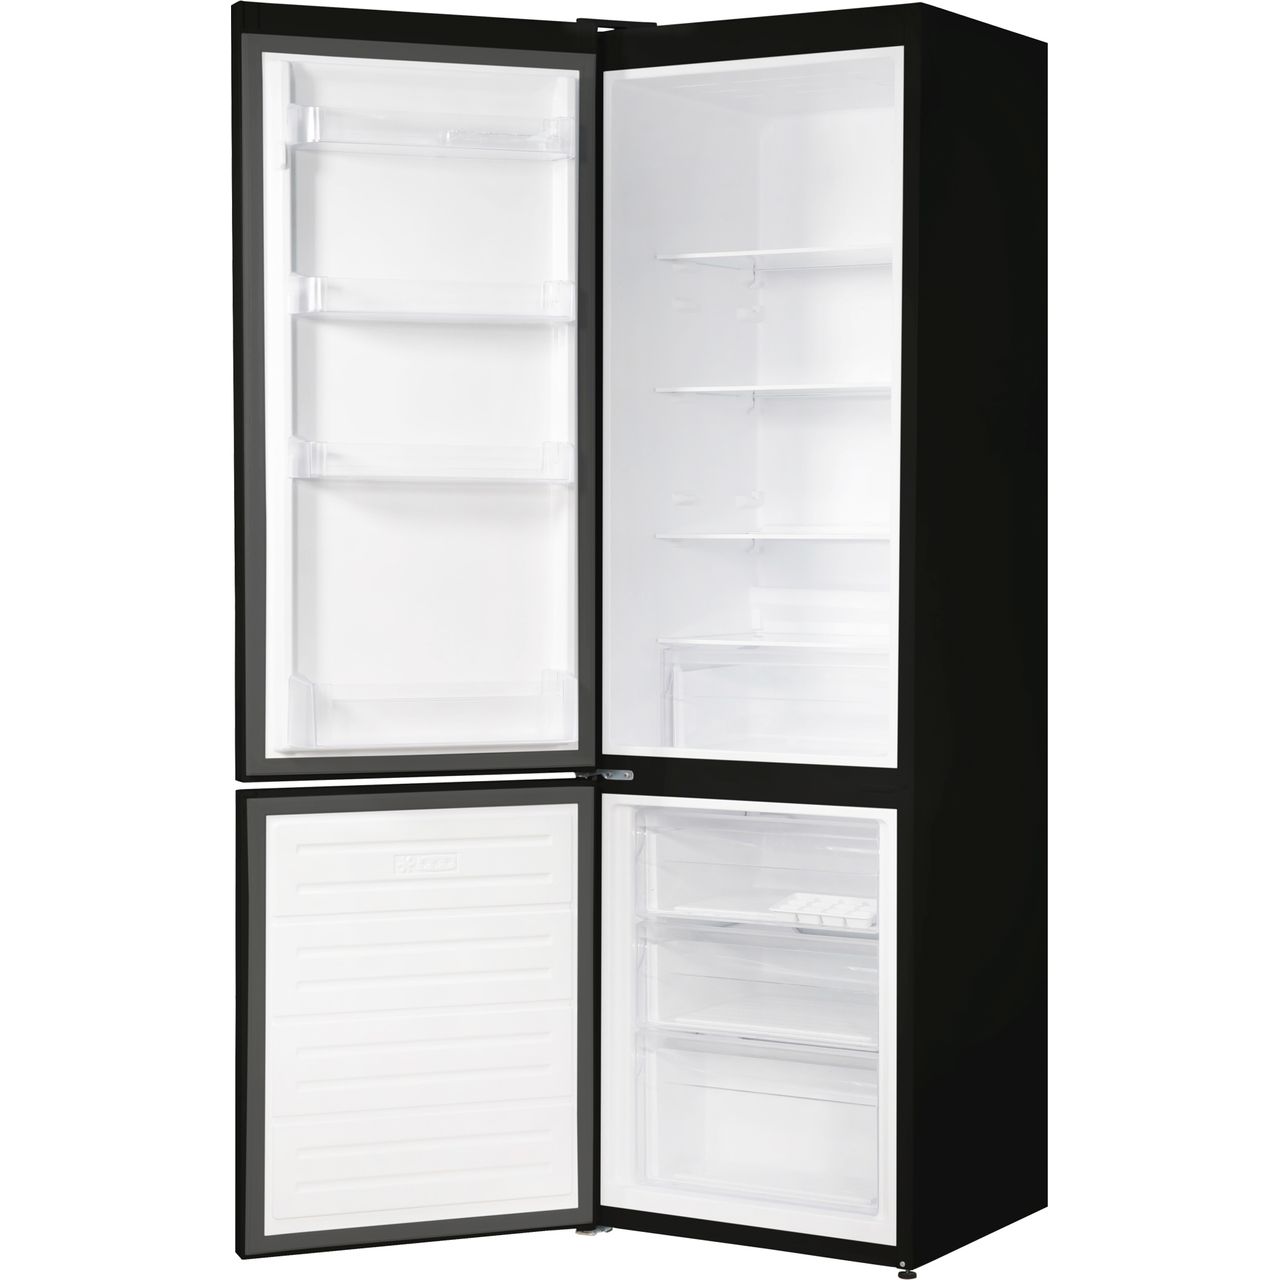 Russell Hobbs RH180FFFF55B fridge-freezer Freestanding 279 L F Black